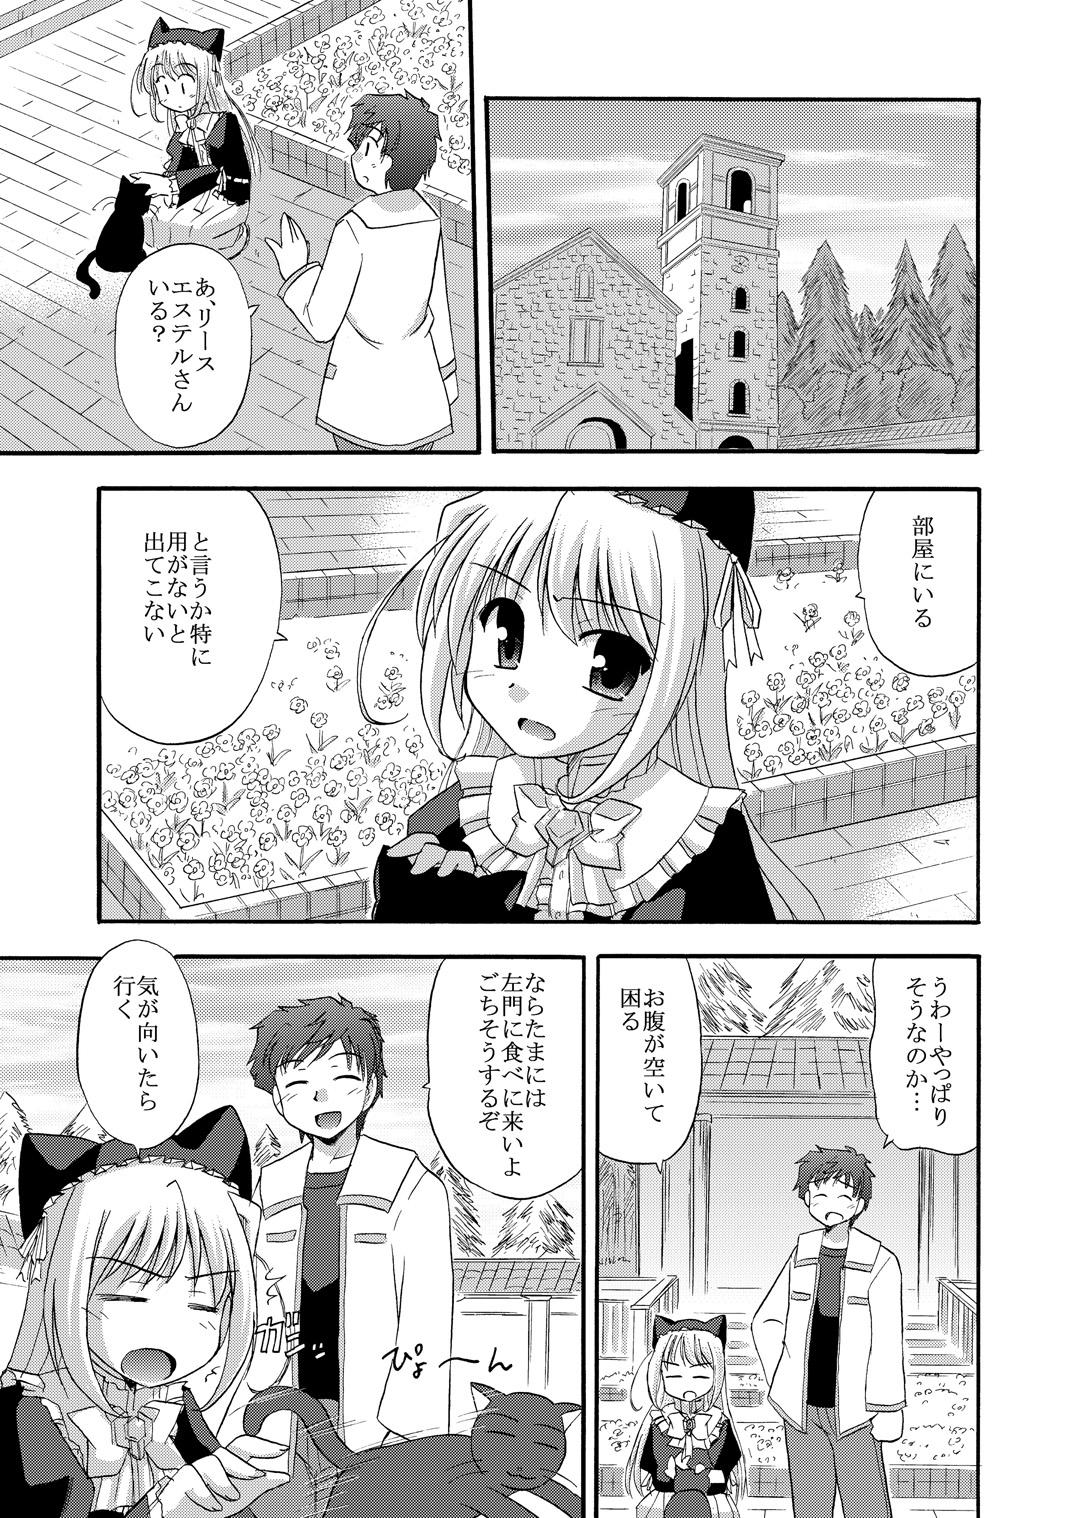 Story Chikyuu de no Sugoshikata - Yoake mae yori ruriiro na Hiddencam - Page 4